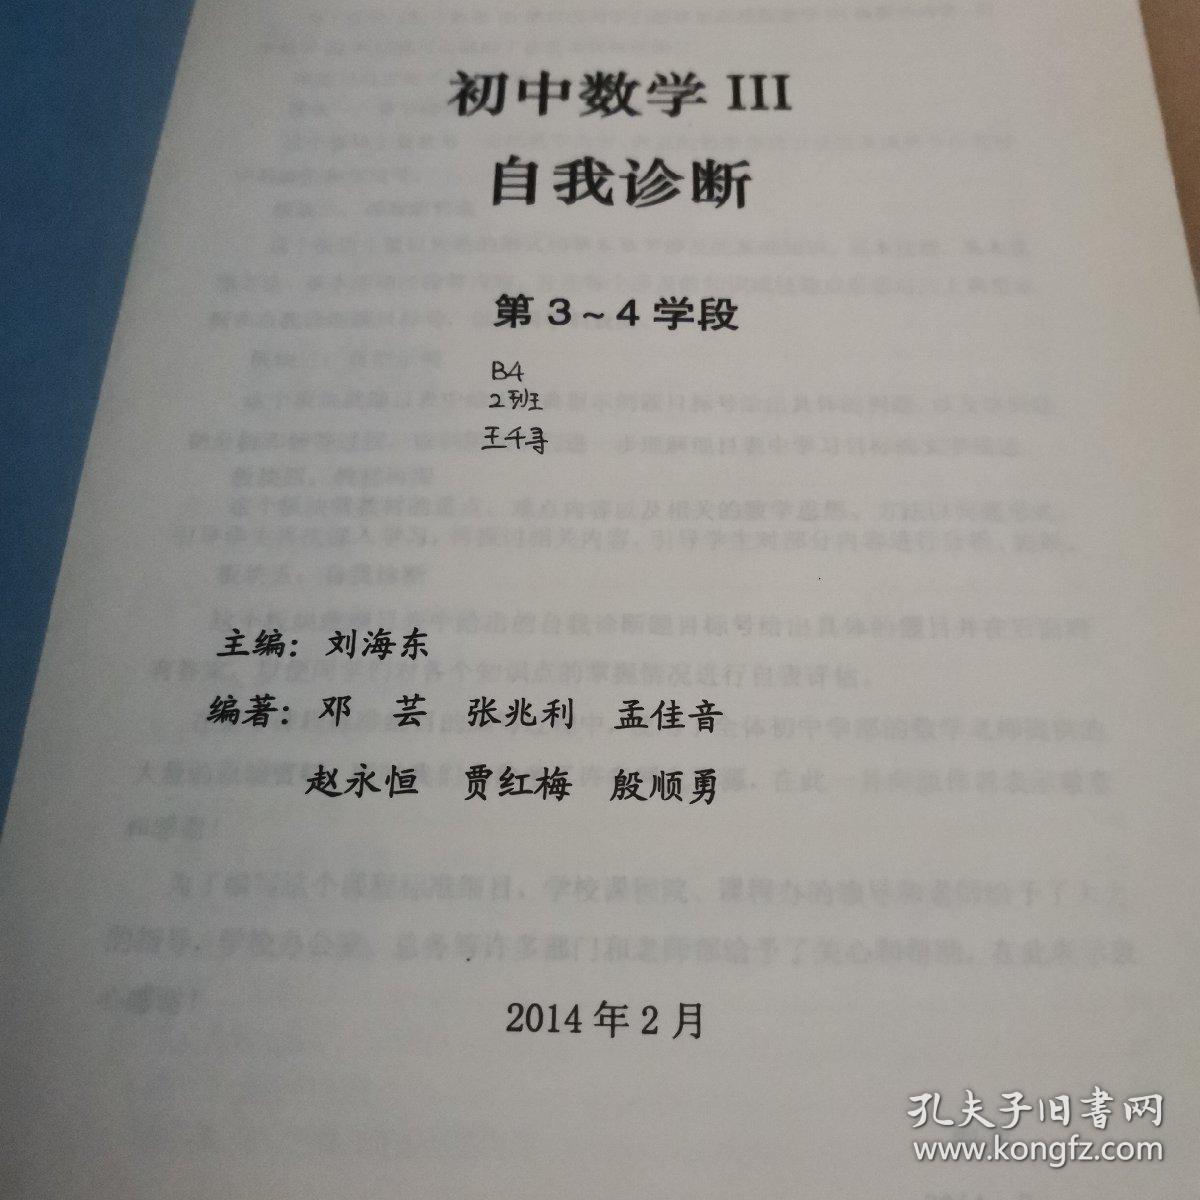 北京十一学校-初中数学III自我诊断（第3-4学段）